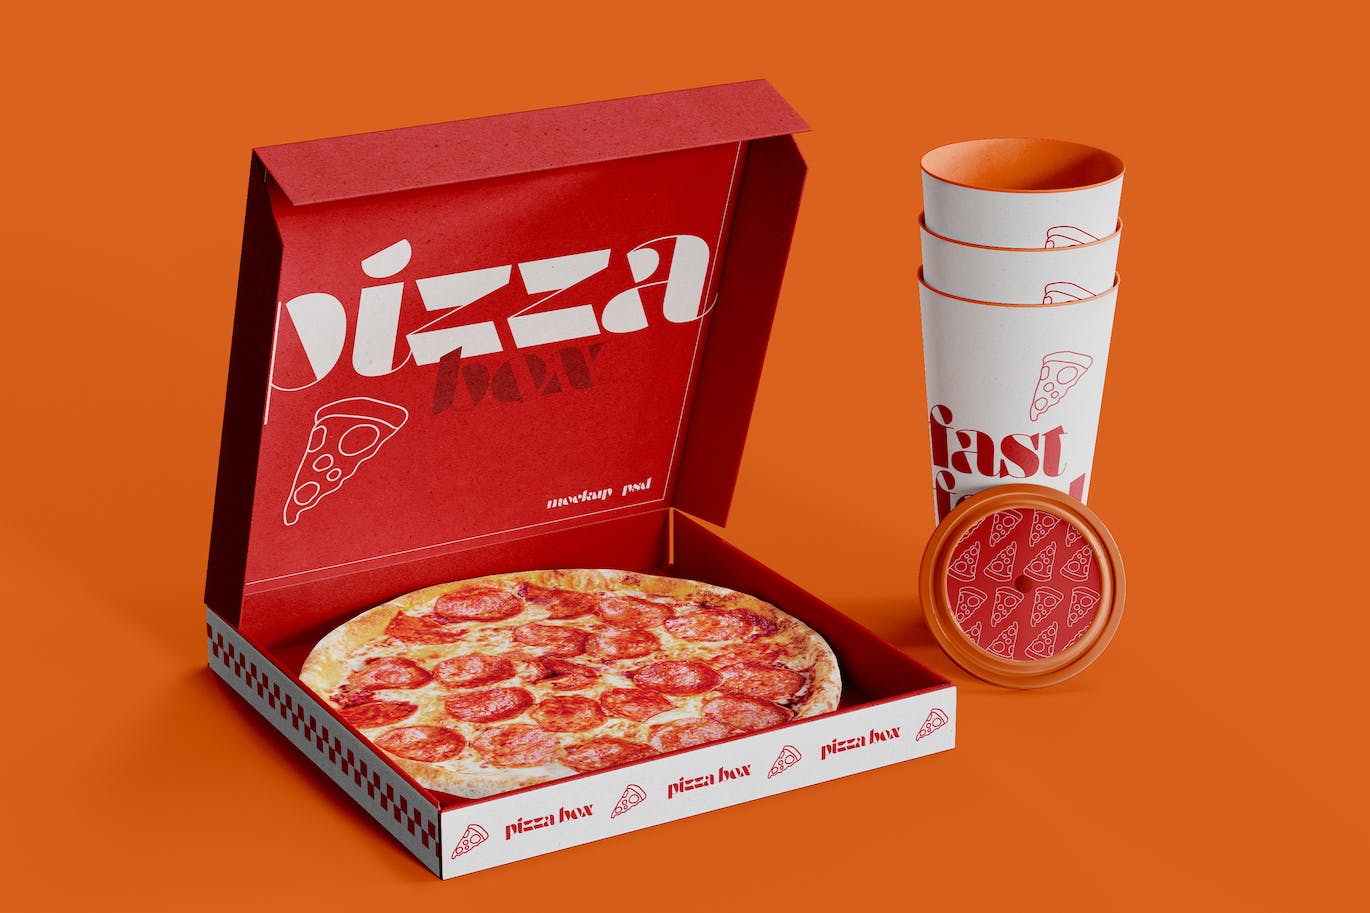 披萨盒与纸杯品牌设计样机图 Pizza Box with Cardboard Cup Mockup 样机素材 第1张